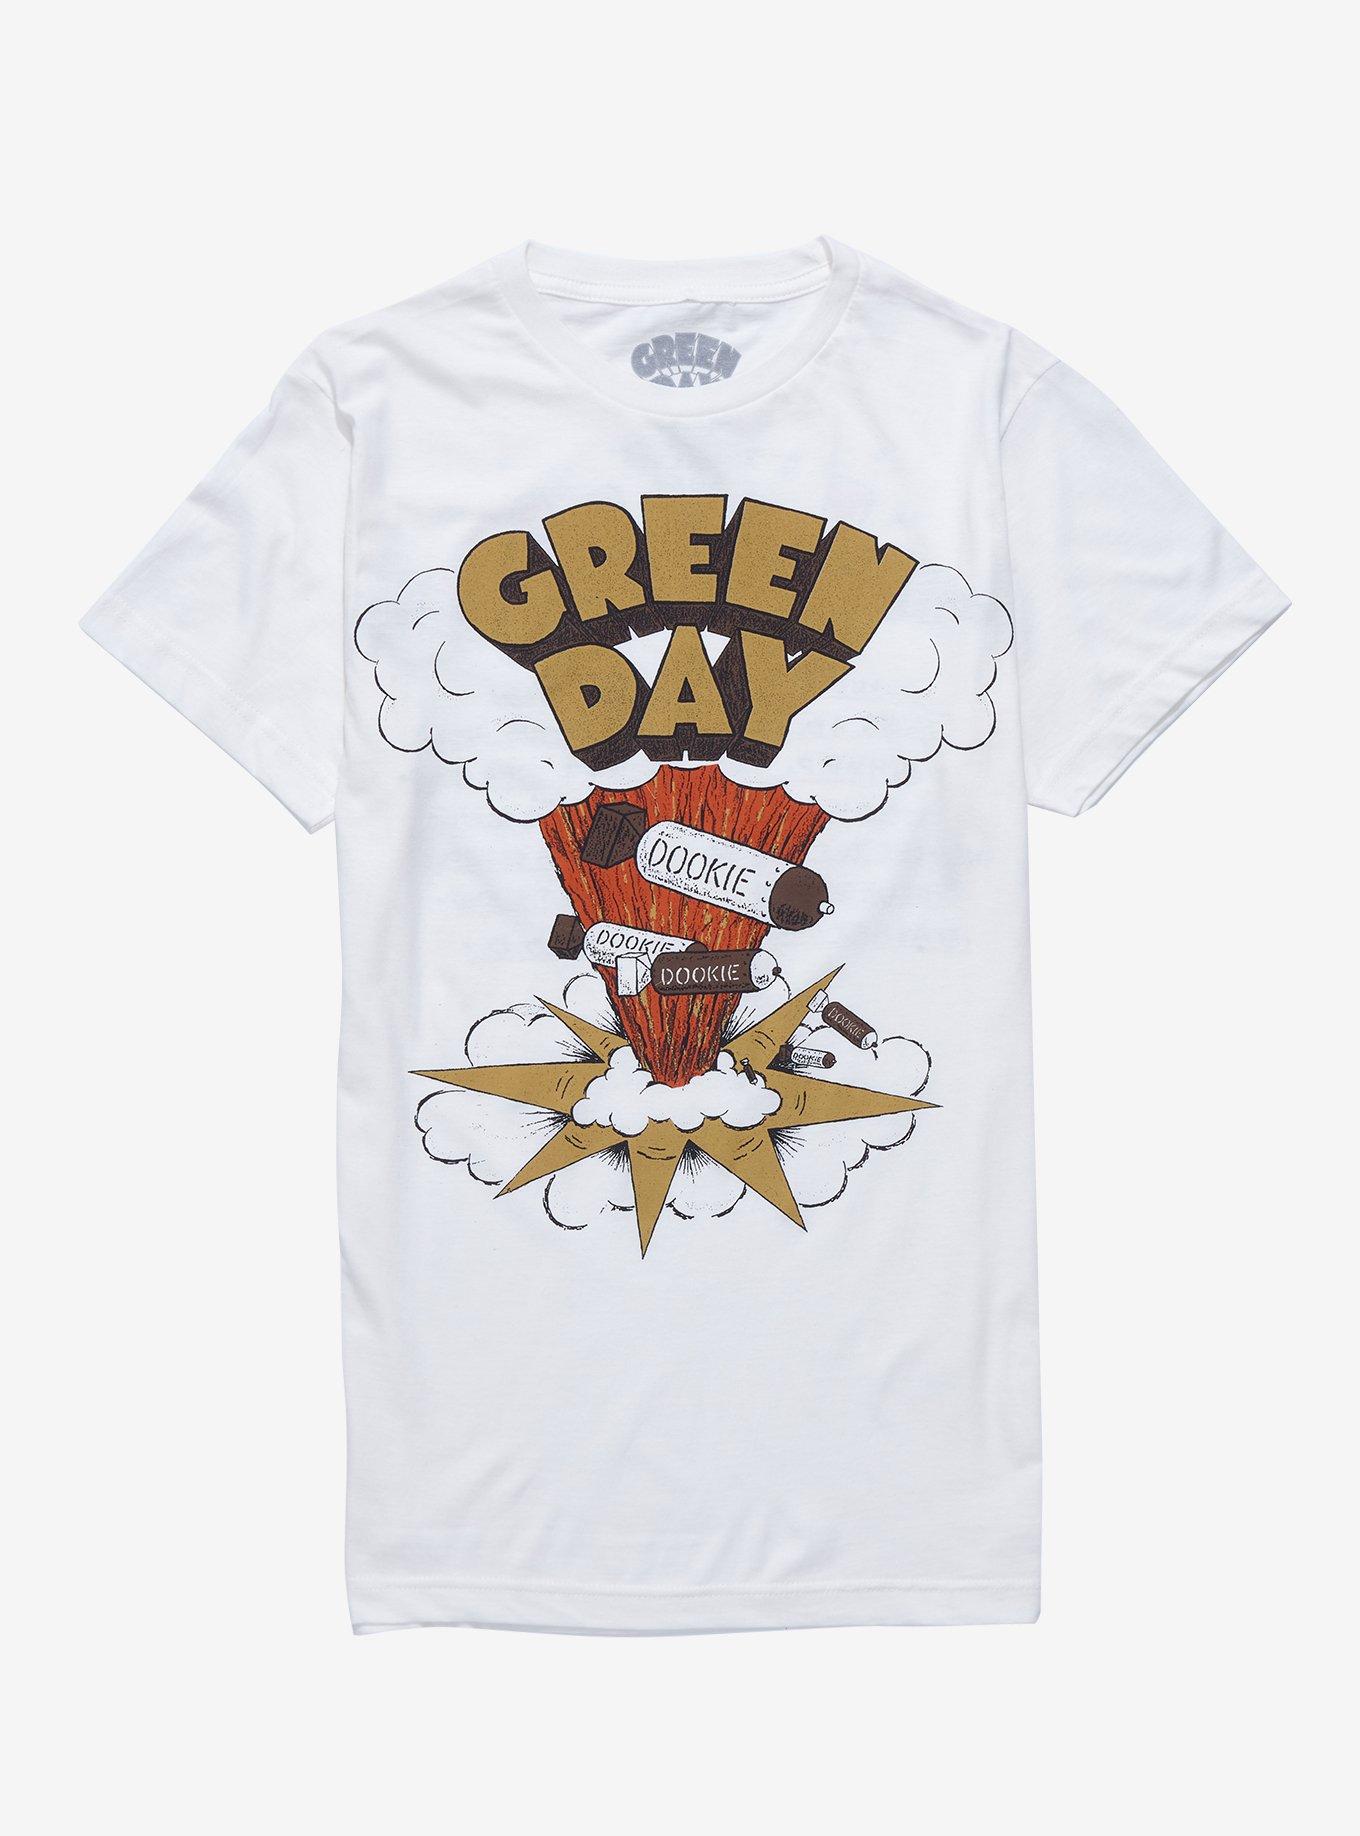 Green Day Dookie Boyfriend Fit Girls T-Shirt, BRIGHT WHITE, hi-res